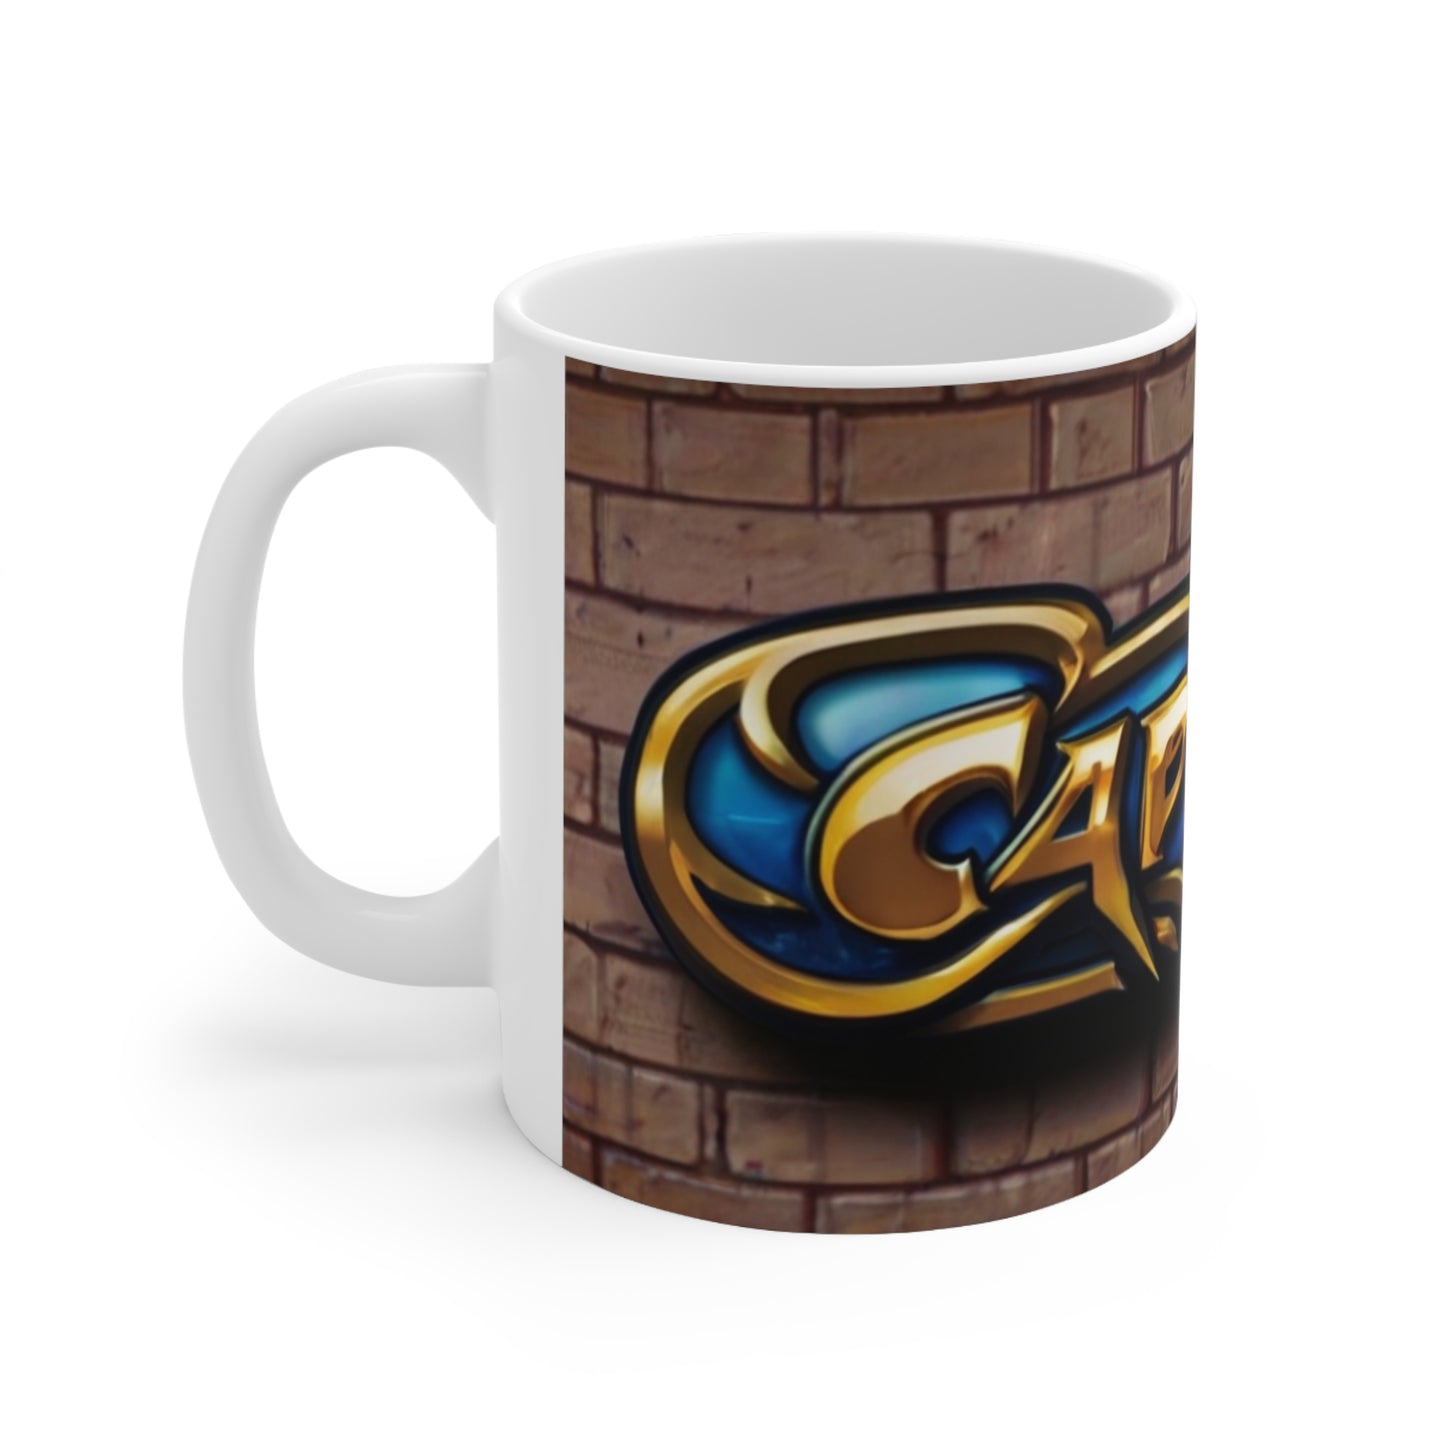 Chrome Capcom Brick Background Art Mug - Ceramic Coffee Mug 11oz